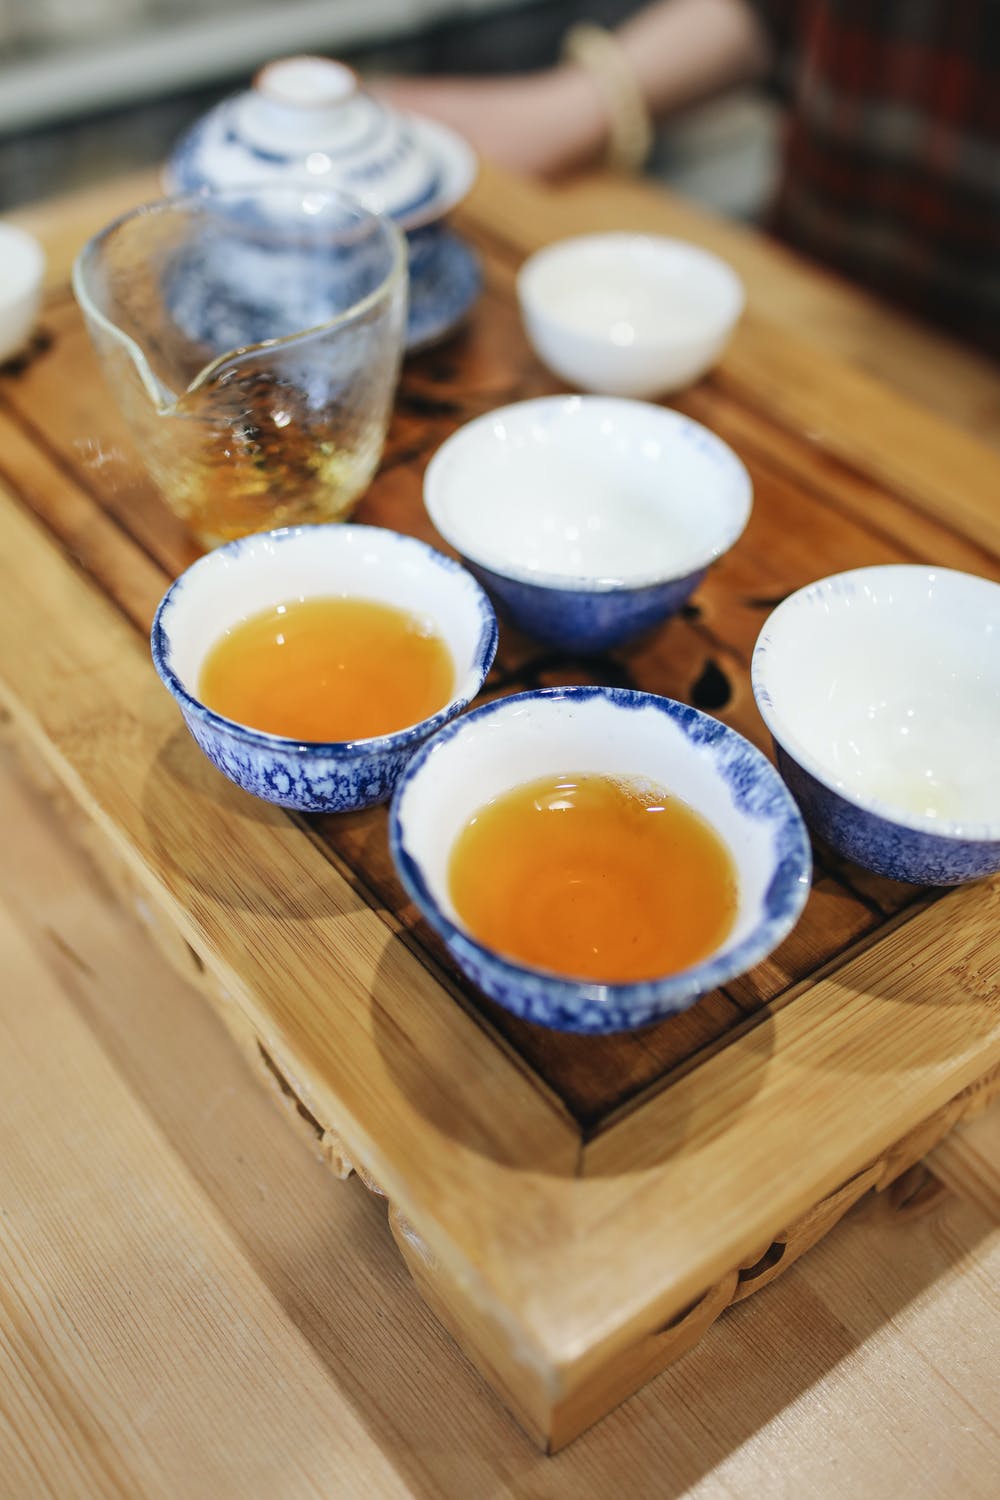 فوائد الشاي الاخضر الصحية وفقًا لأخصائي التغذية Aio_ao10